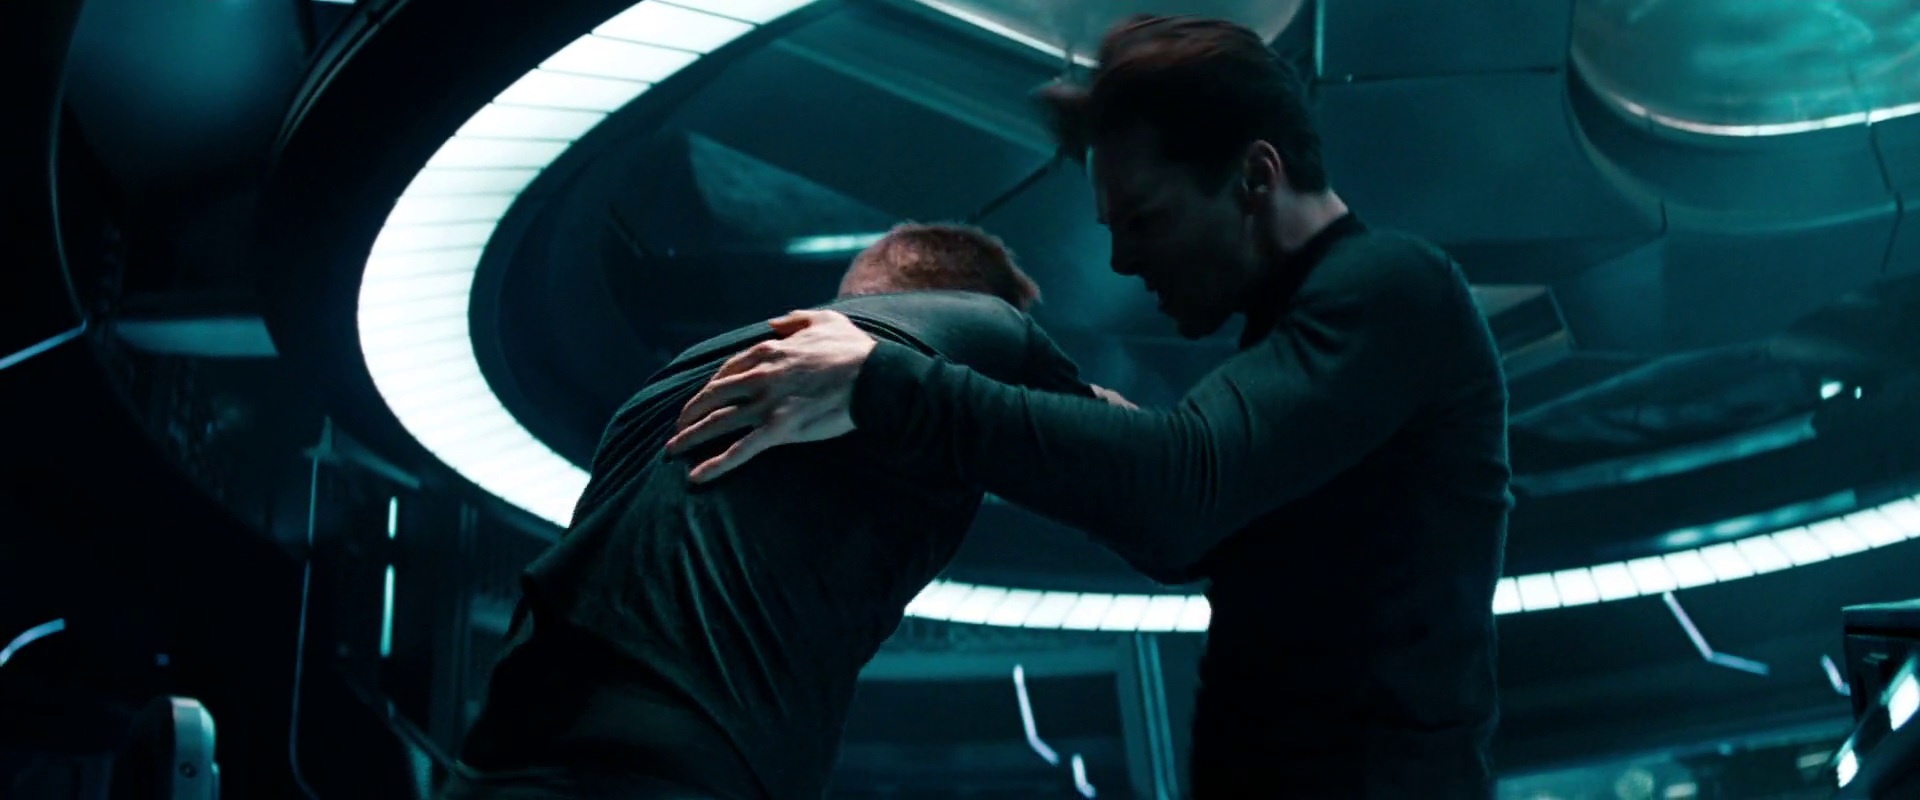 Kirk najde můstek, pak se snaží zneškodnit Khana, ale to se nepovede a Khan zabije admirála.